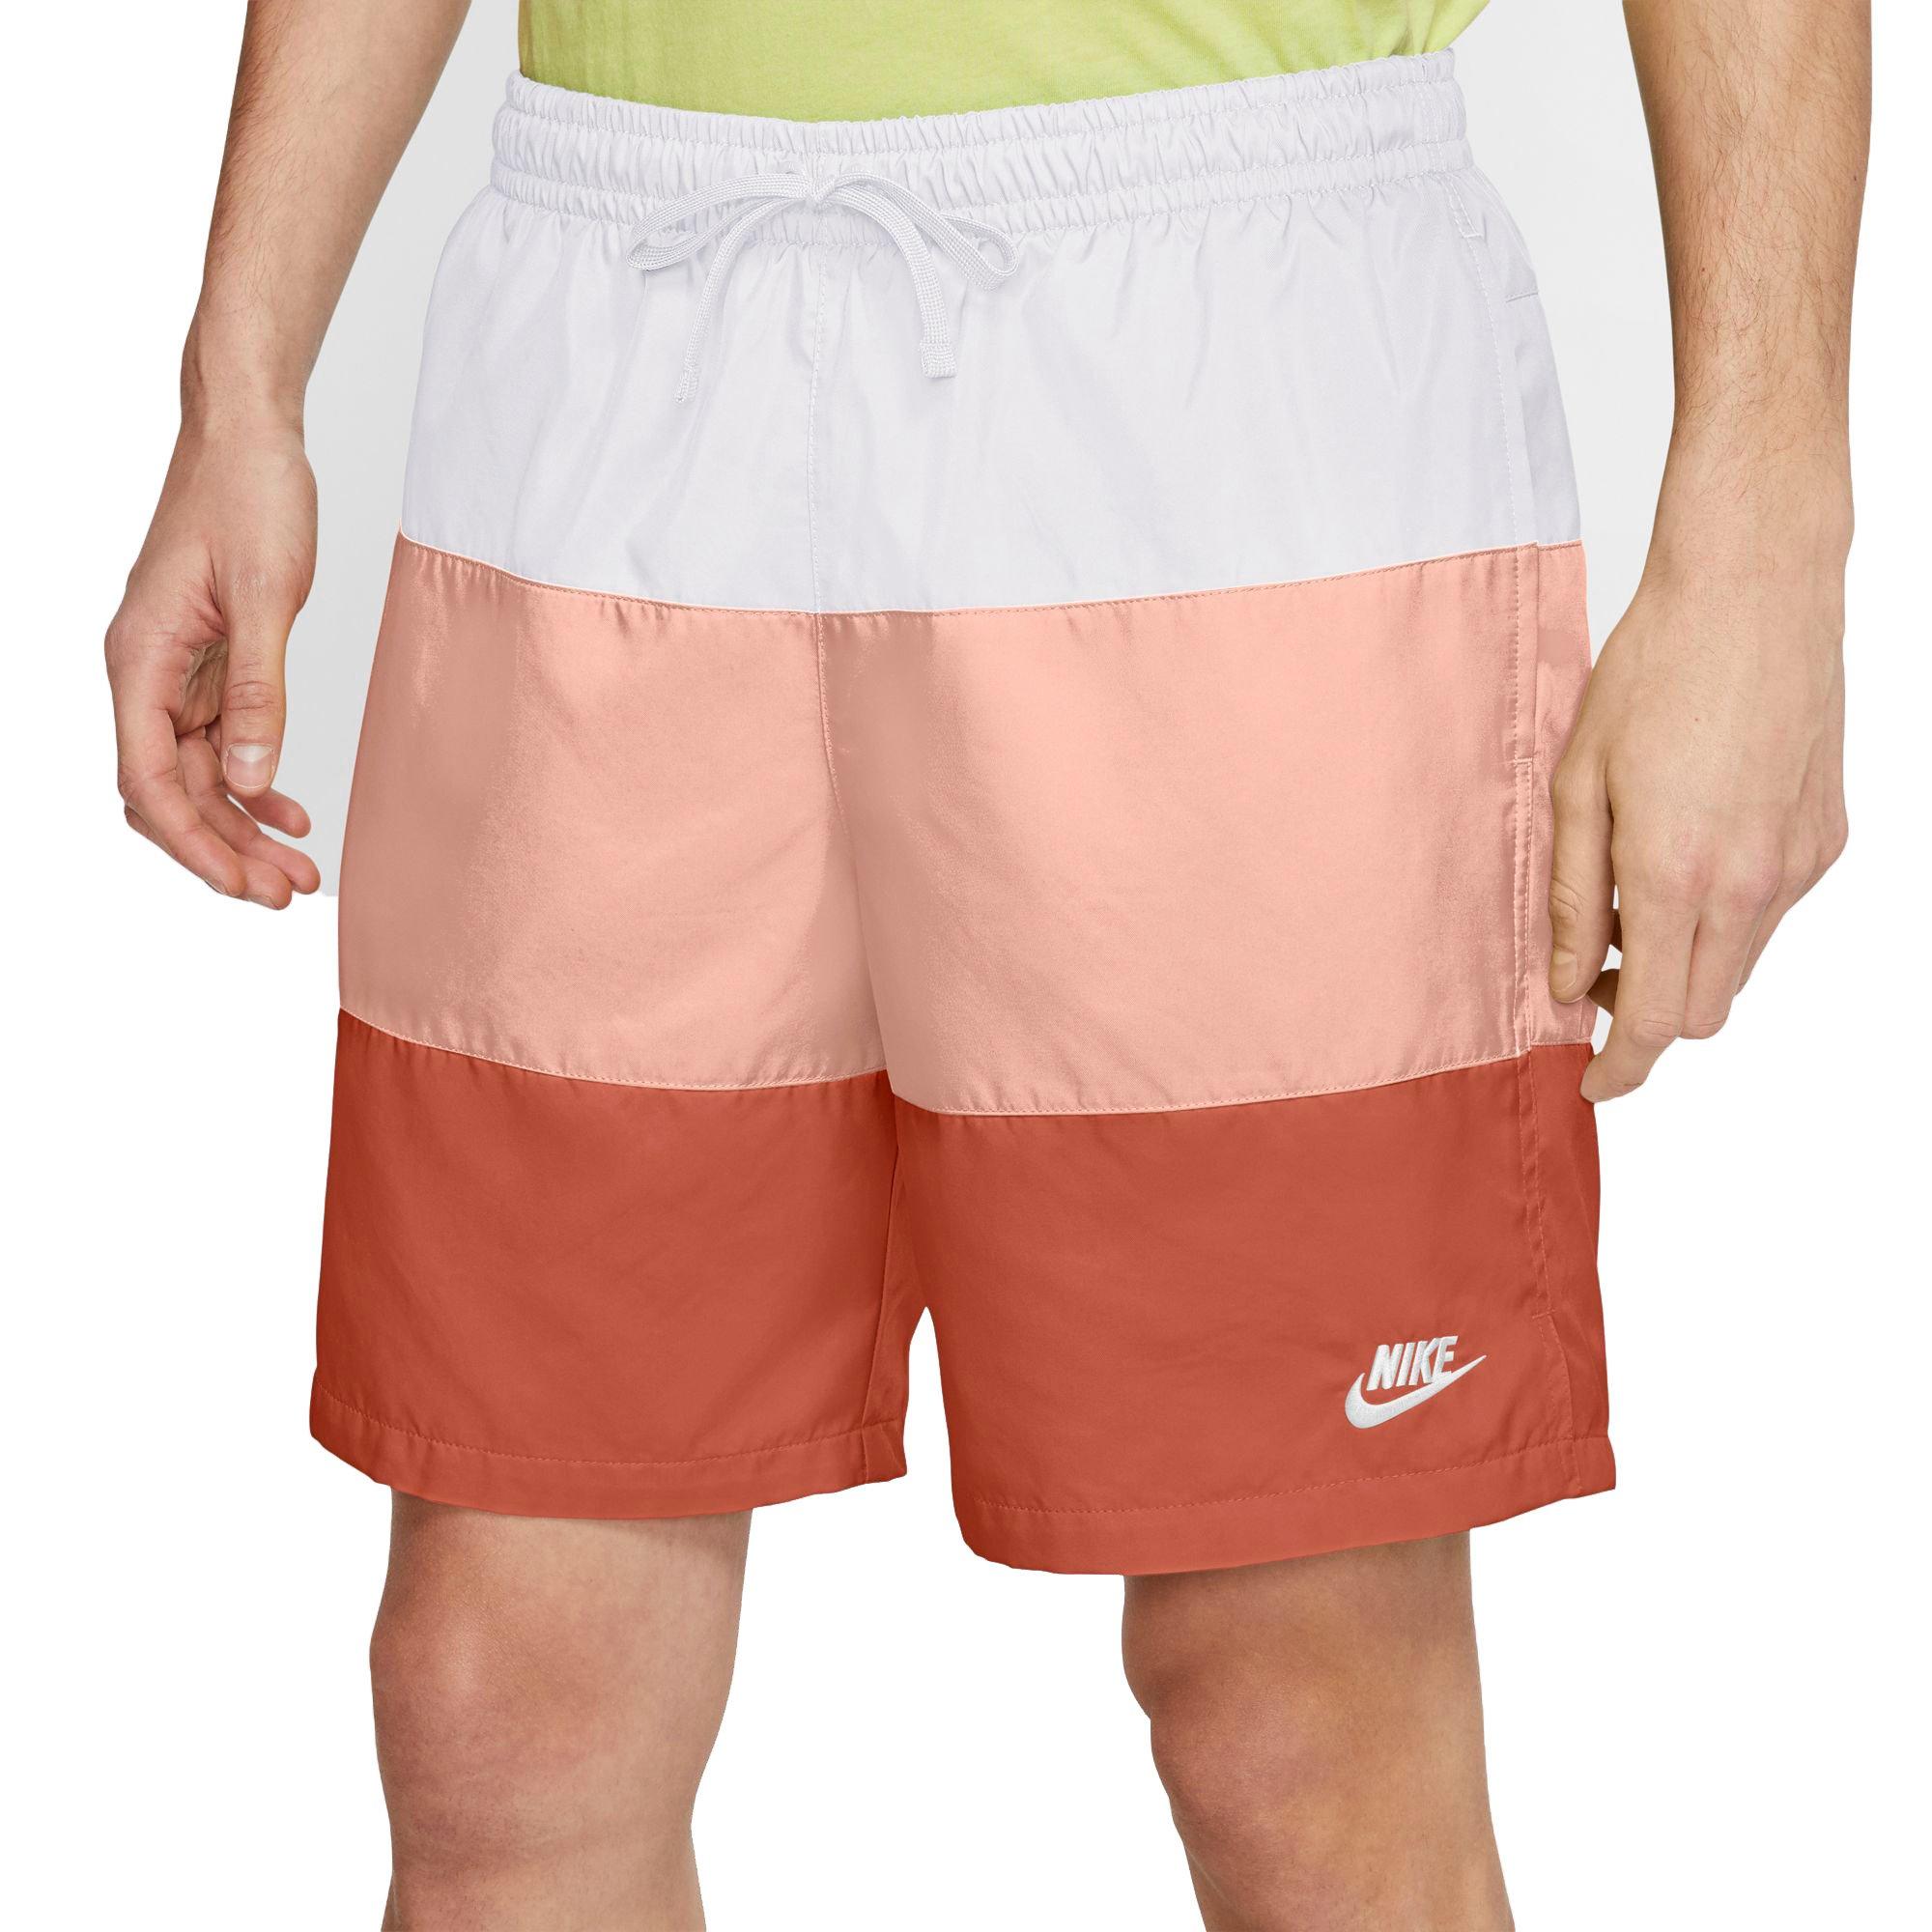 Nike Men's Sportswear Woven Novelty Shorts